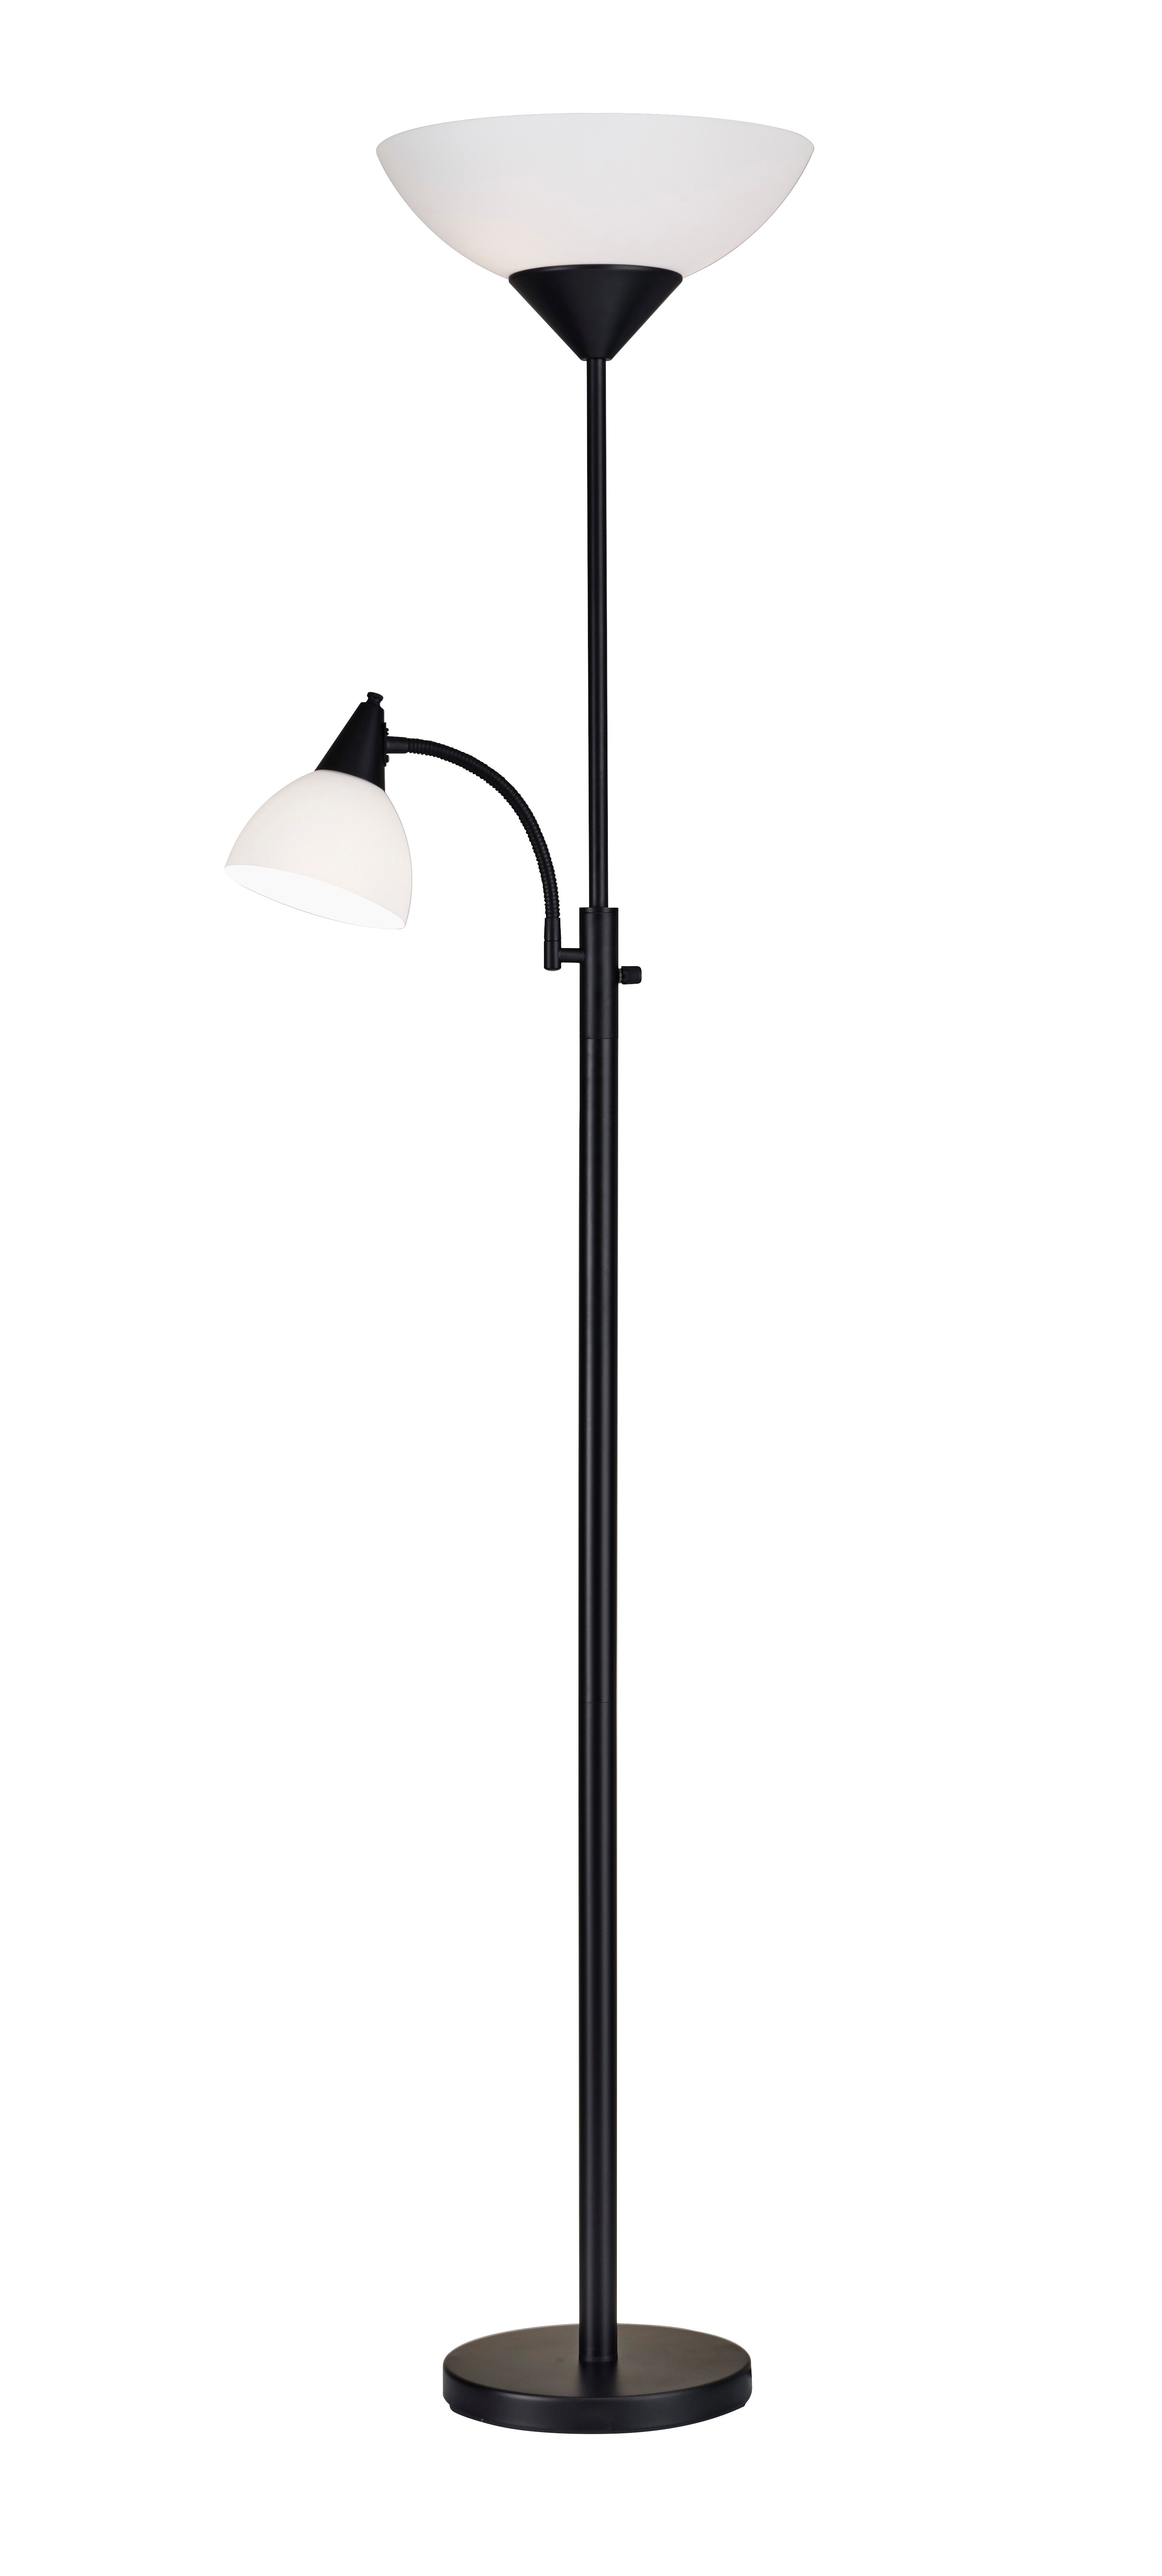 PIEDMONT Lampe sur pied Noir - 7202-01 | ADESSO